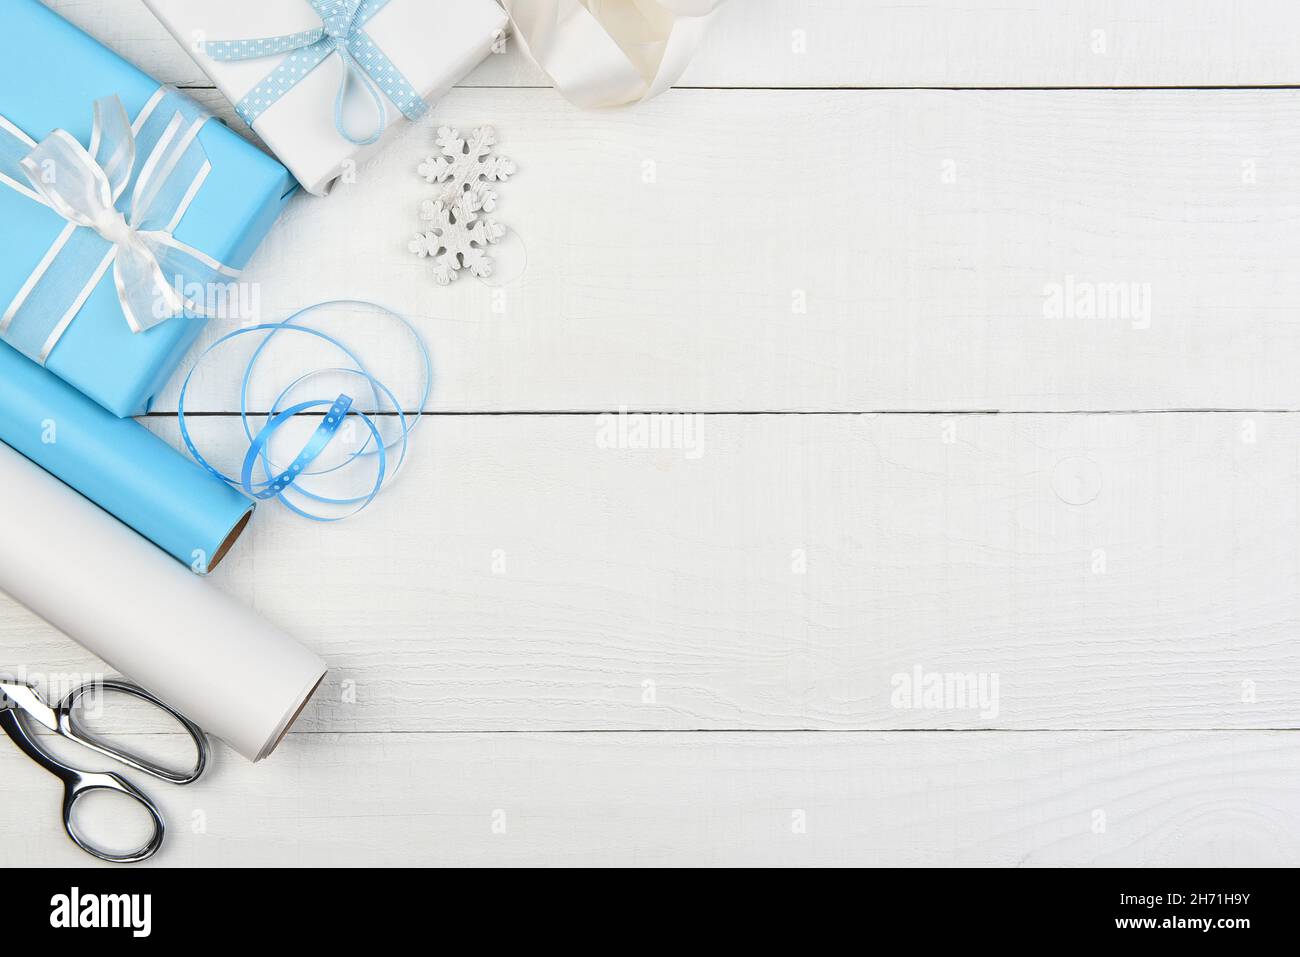 Décoration de Noël - cadeaux de Noël enveloppés de bleu et de blanc sur le côté gauche du cadre avec espace de copie. Banque D'Images